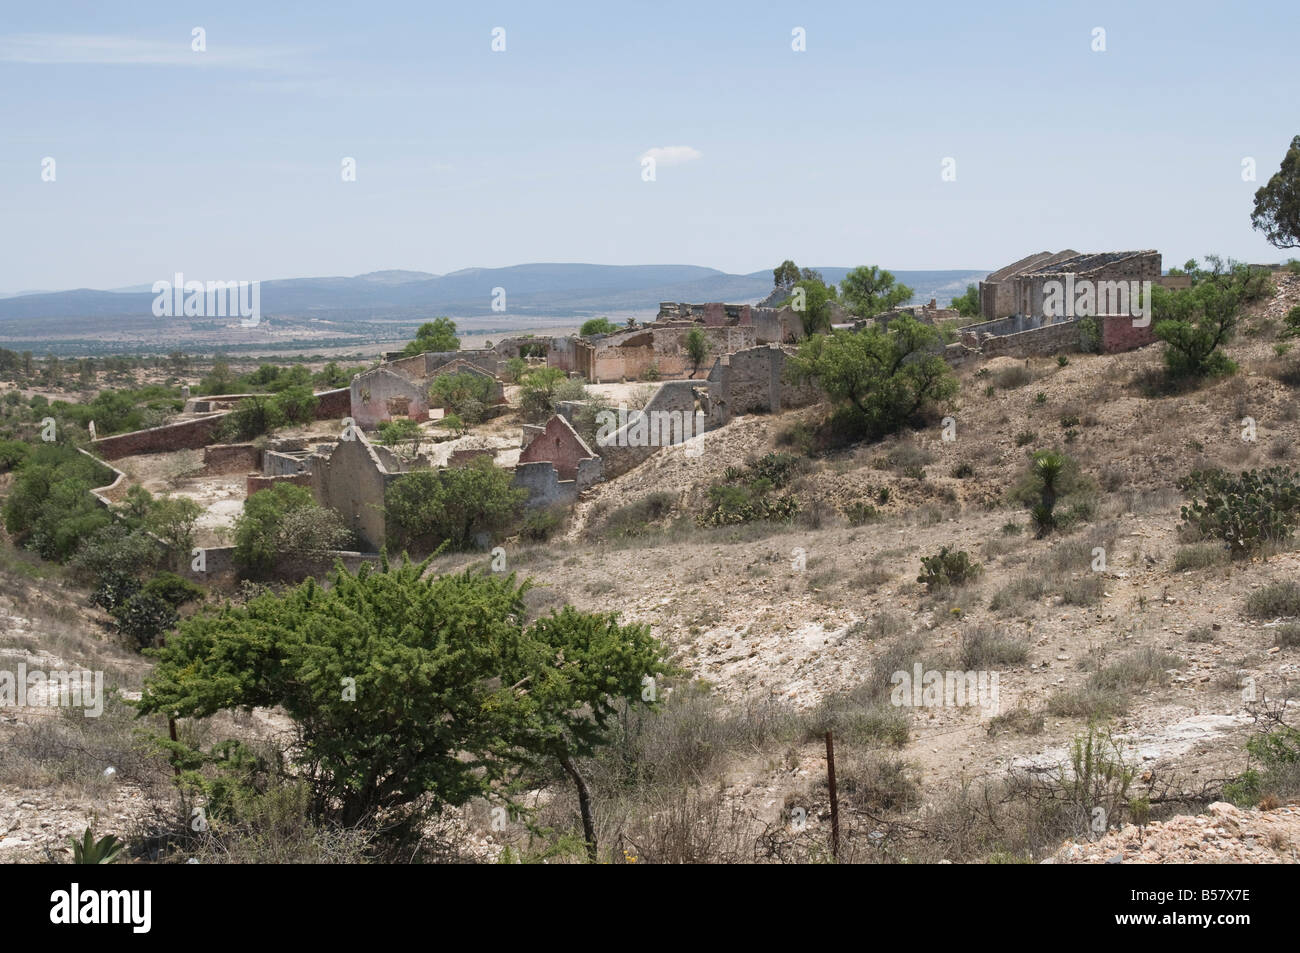 Old silver mine, Mineral de Pozos (Pozos), a UNESCO World Heritage Site, Guanajuato State, Mexico, North America Stock Photo